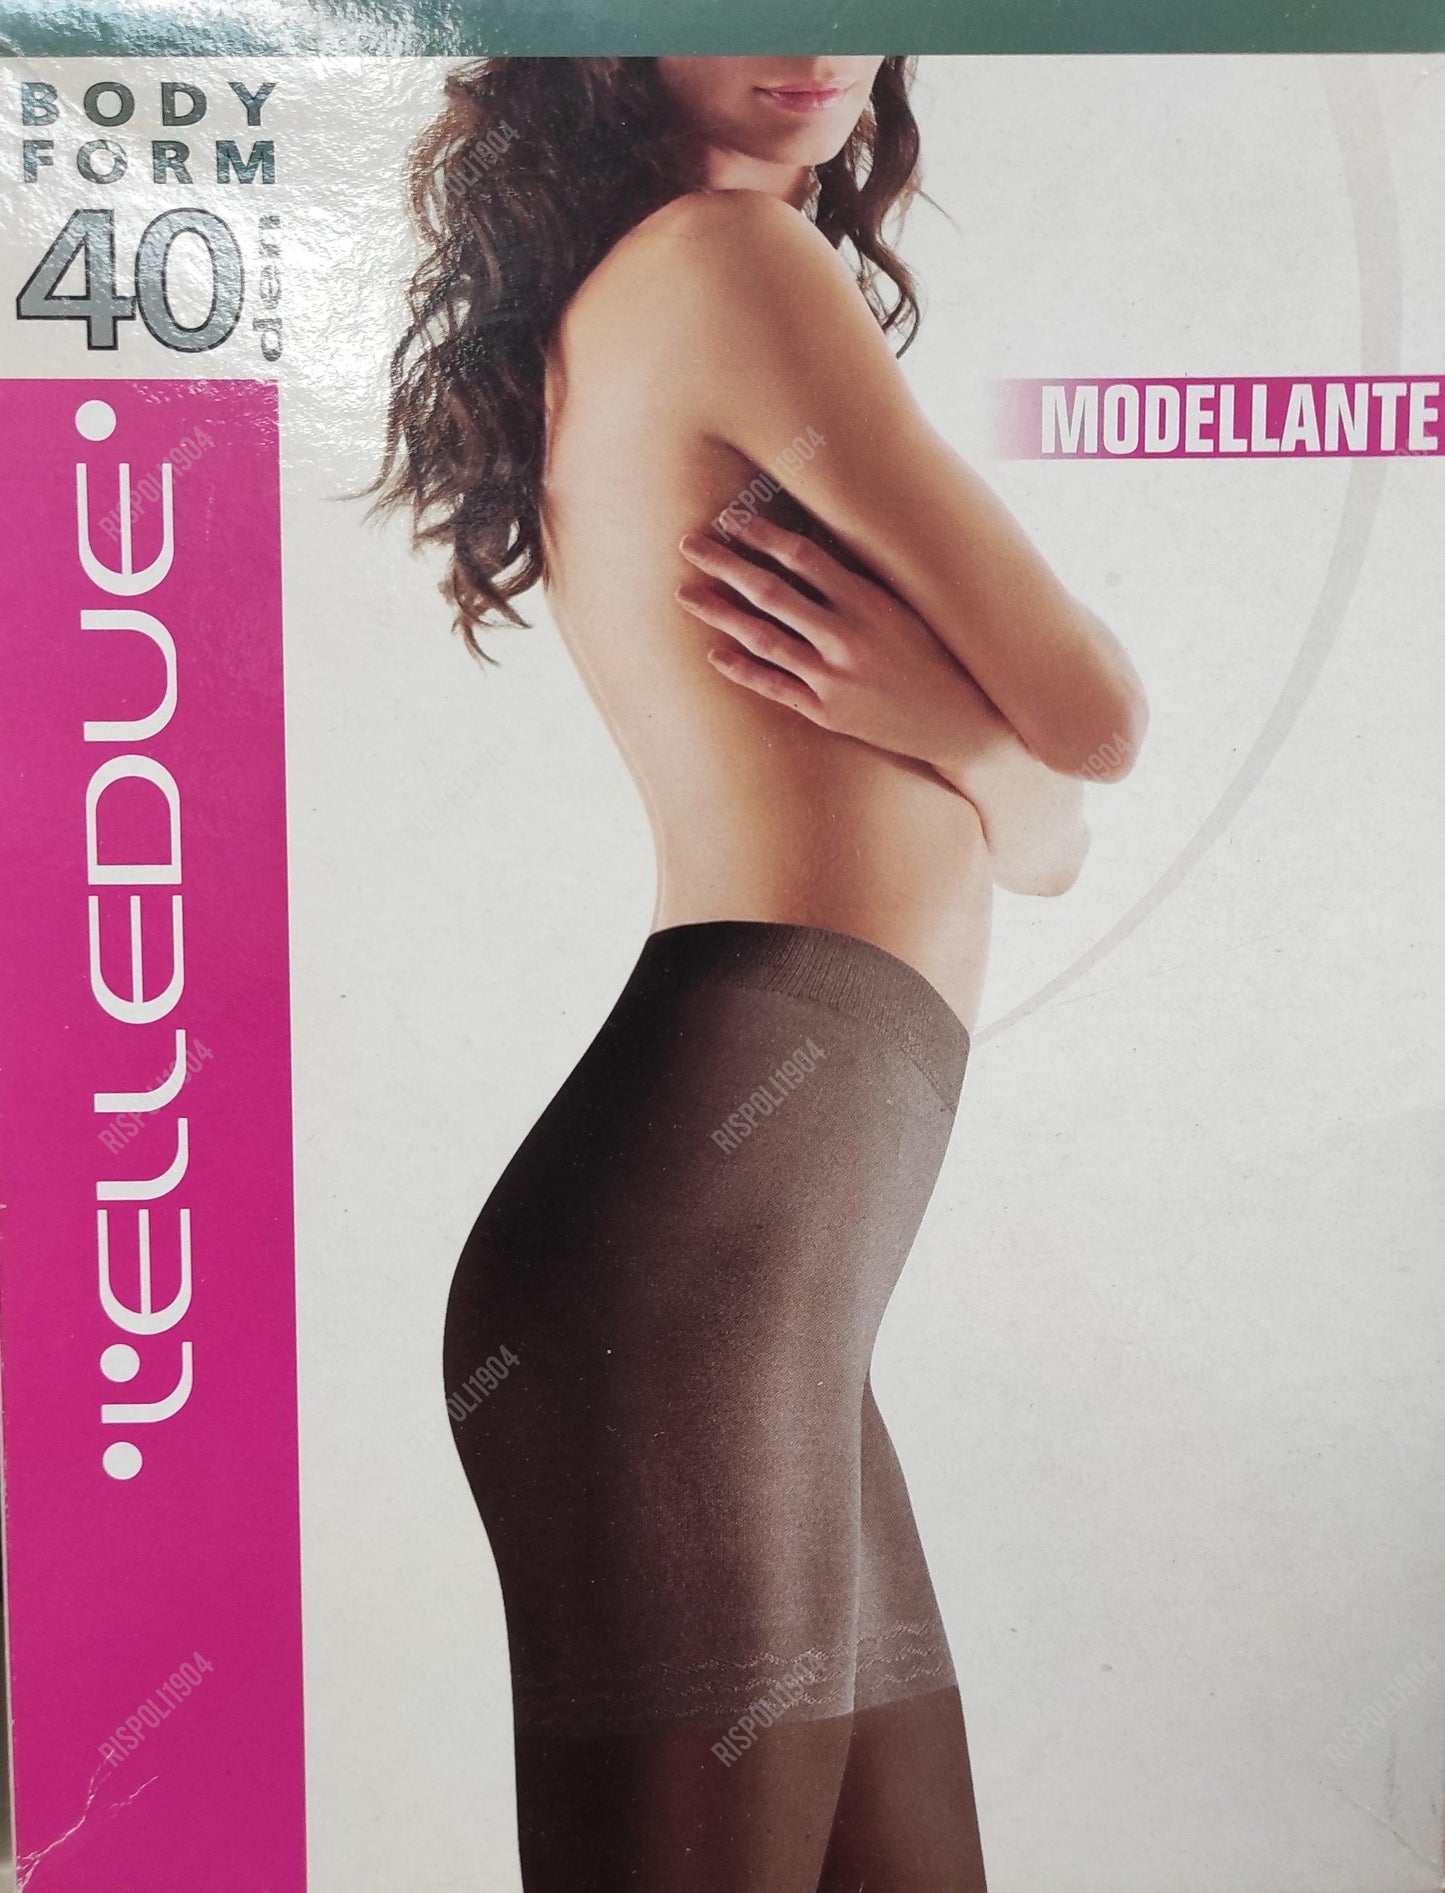 Collant modellante Elledue Body Form 40 den - SVENDITA TOTALE! - Merceria Rispoli